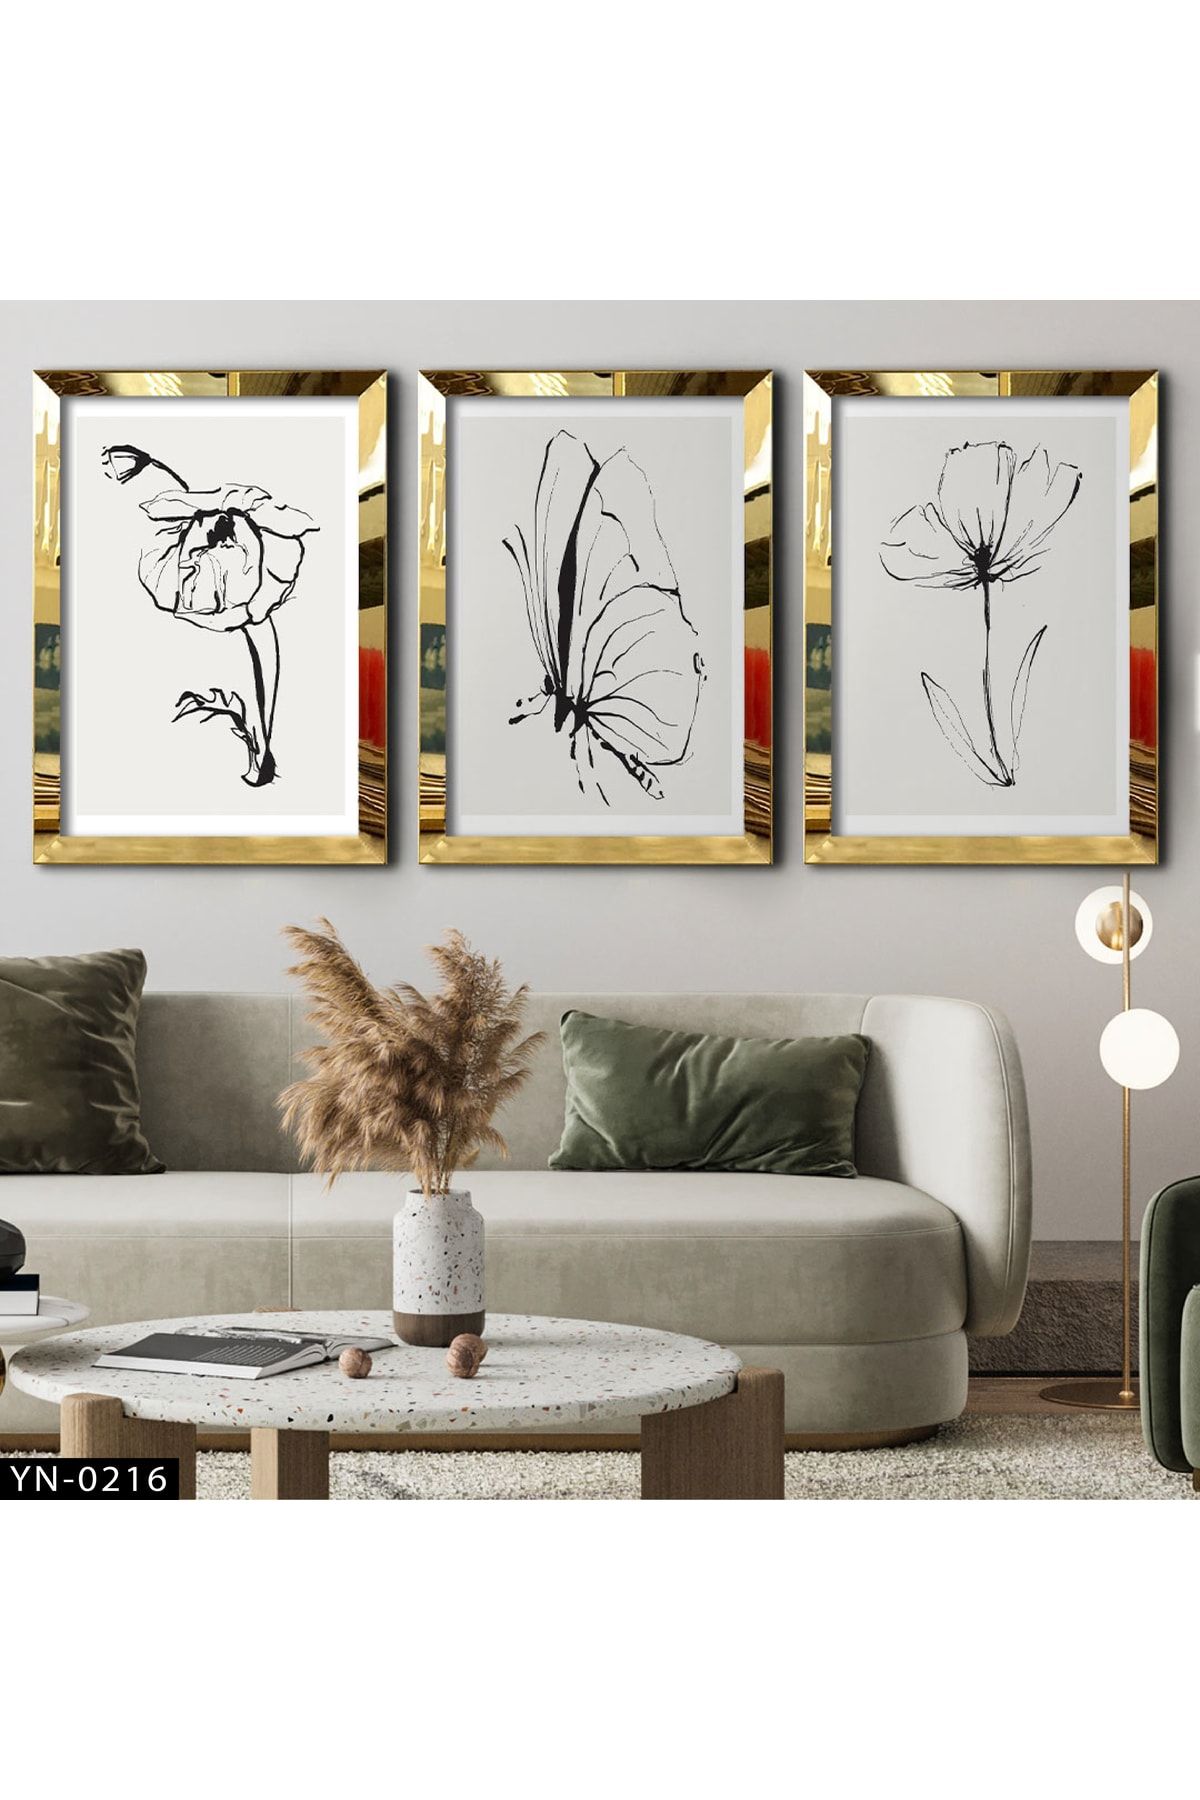 hanhomeart Gelincik Çiçeği - Kelebek Çizim - Gold Ayna Çerçeveli Tablo 3'lü Set-hyn-0216